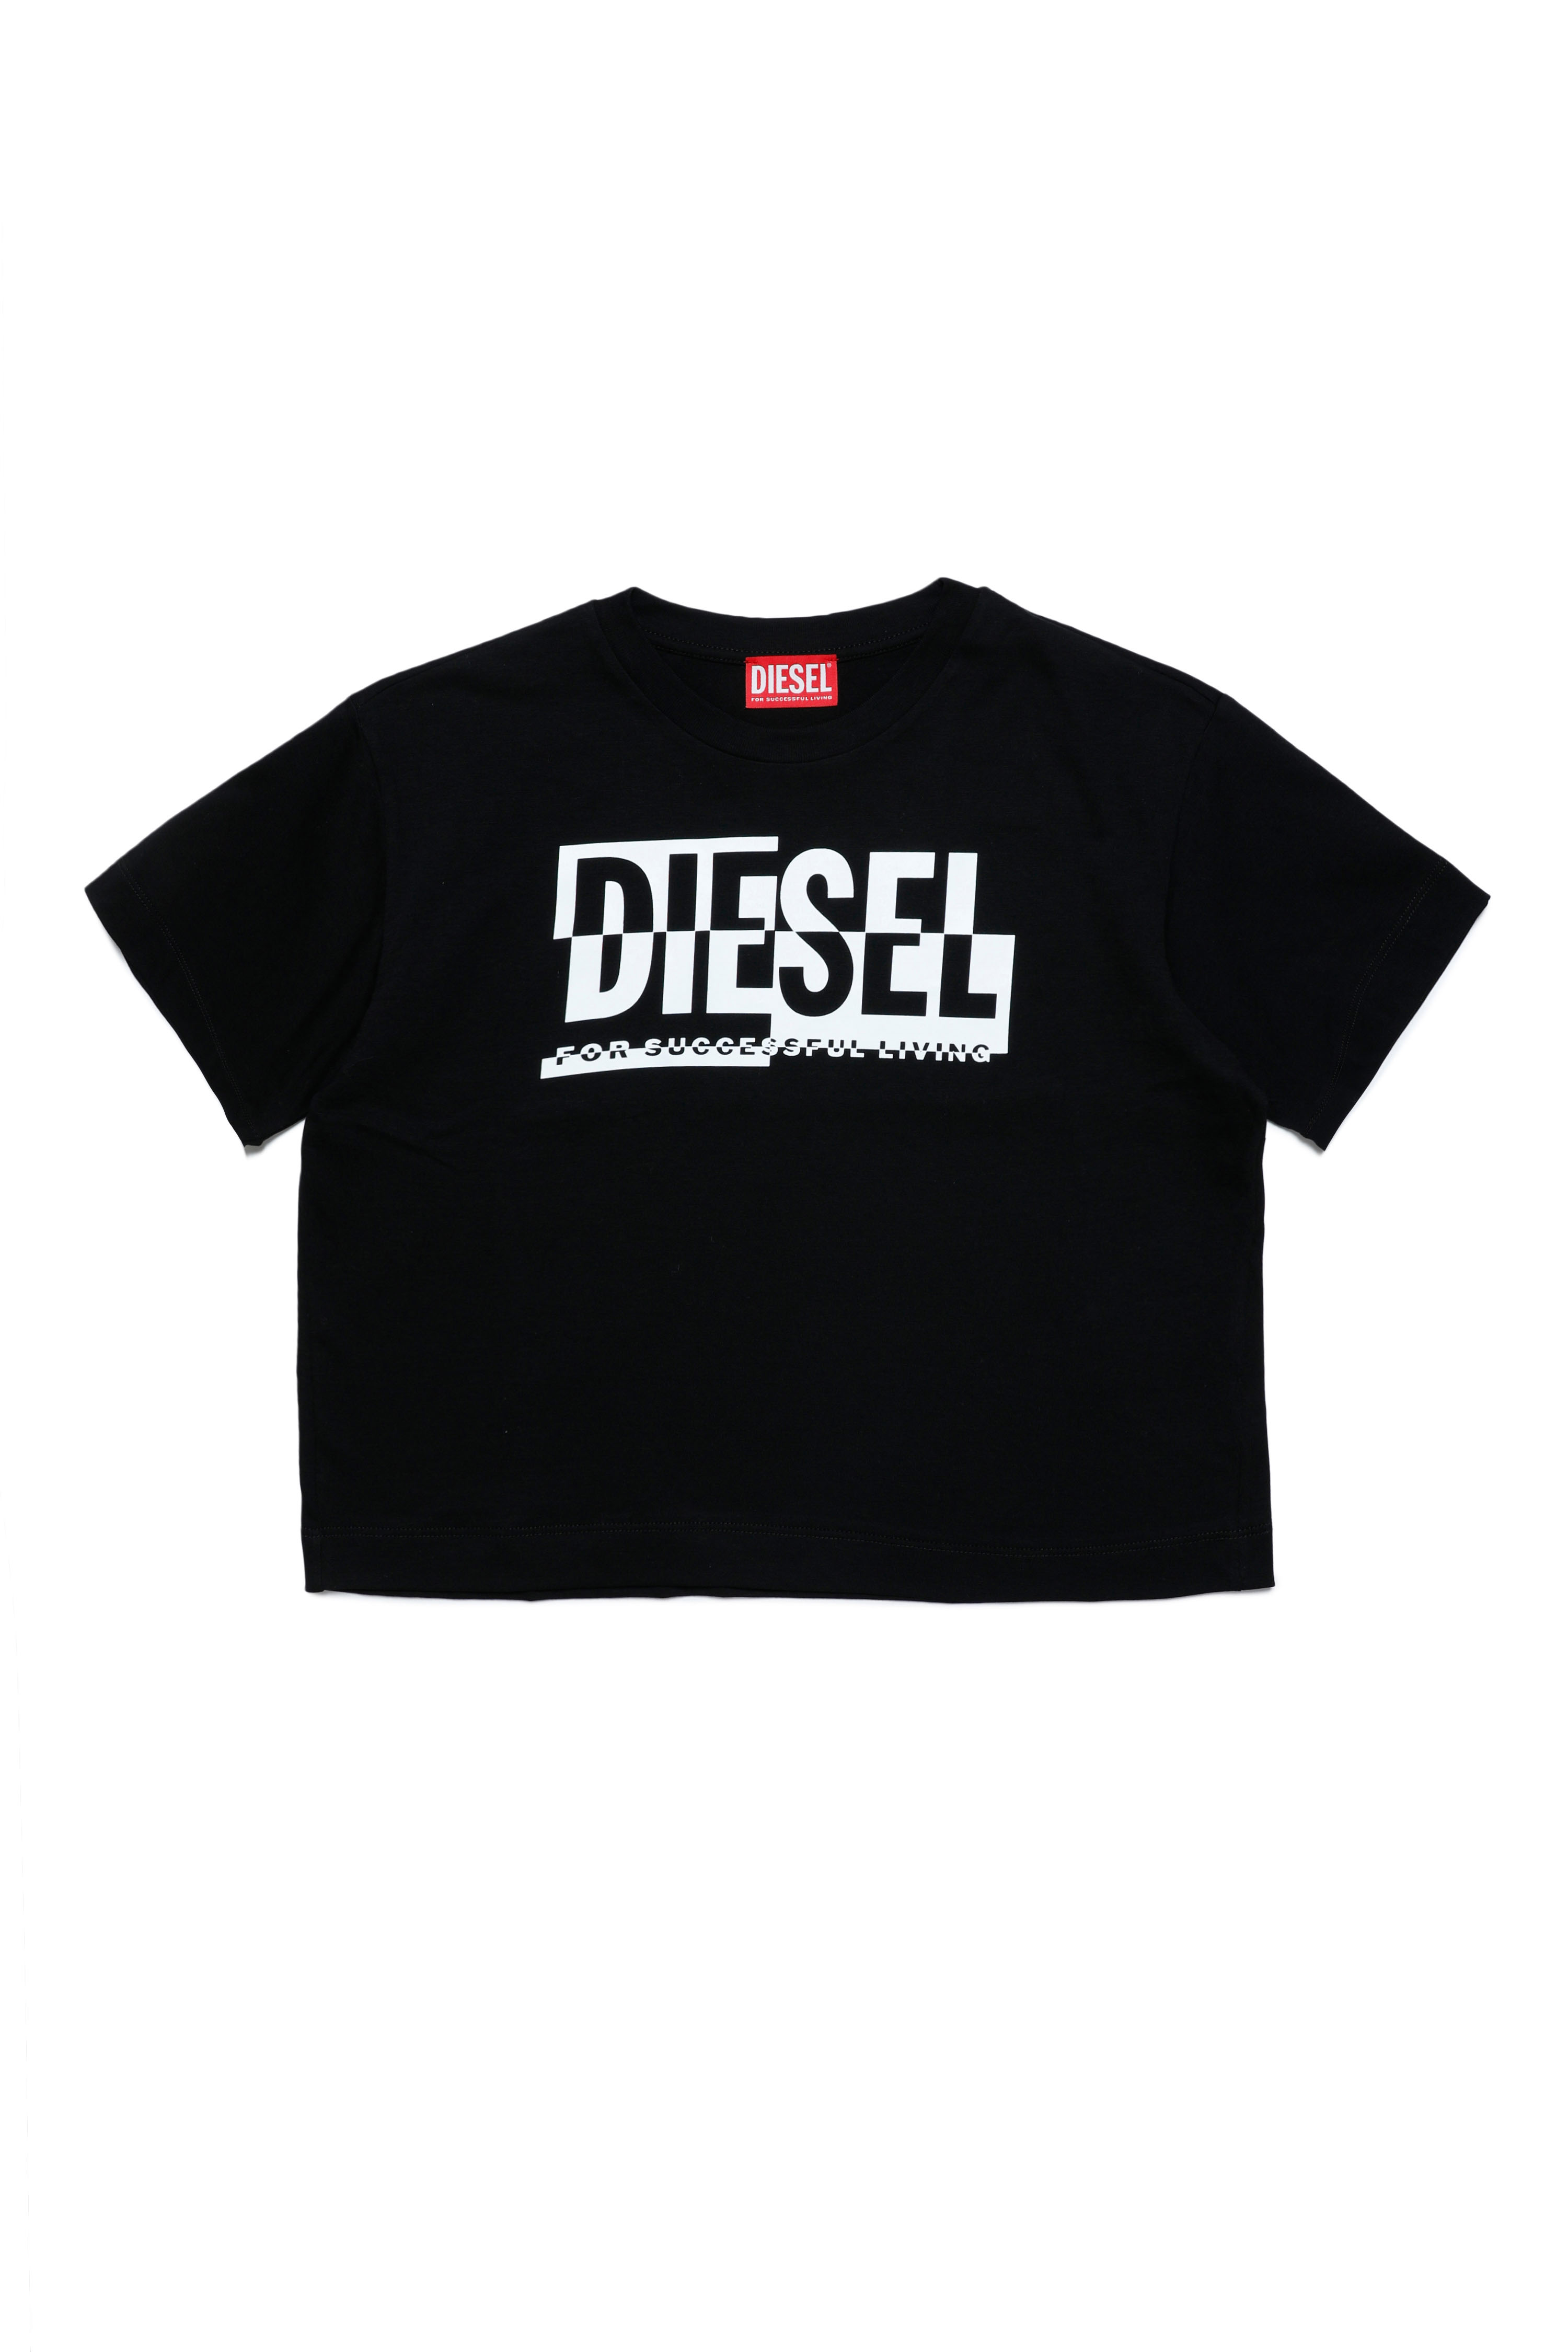 Diesel - TNISSEBR, Black - Image 1